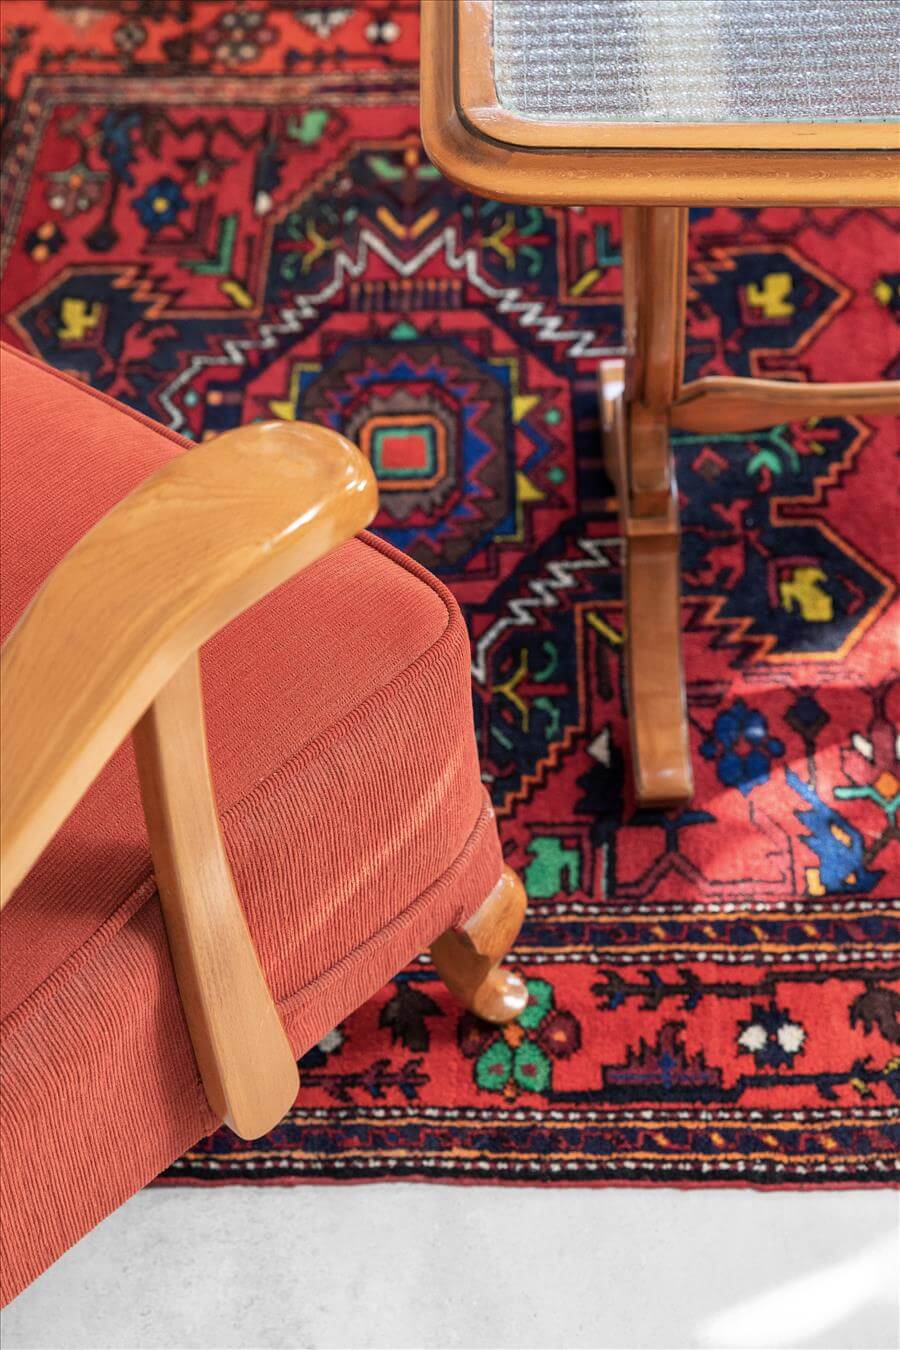 שטיח בסגנון אתני בסלון